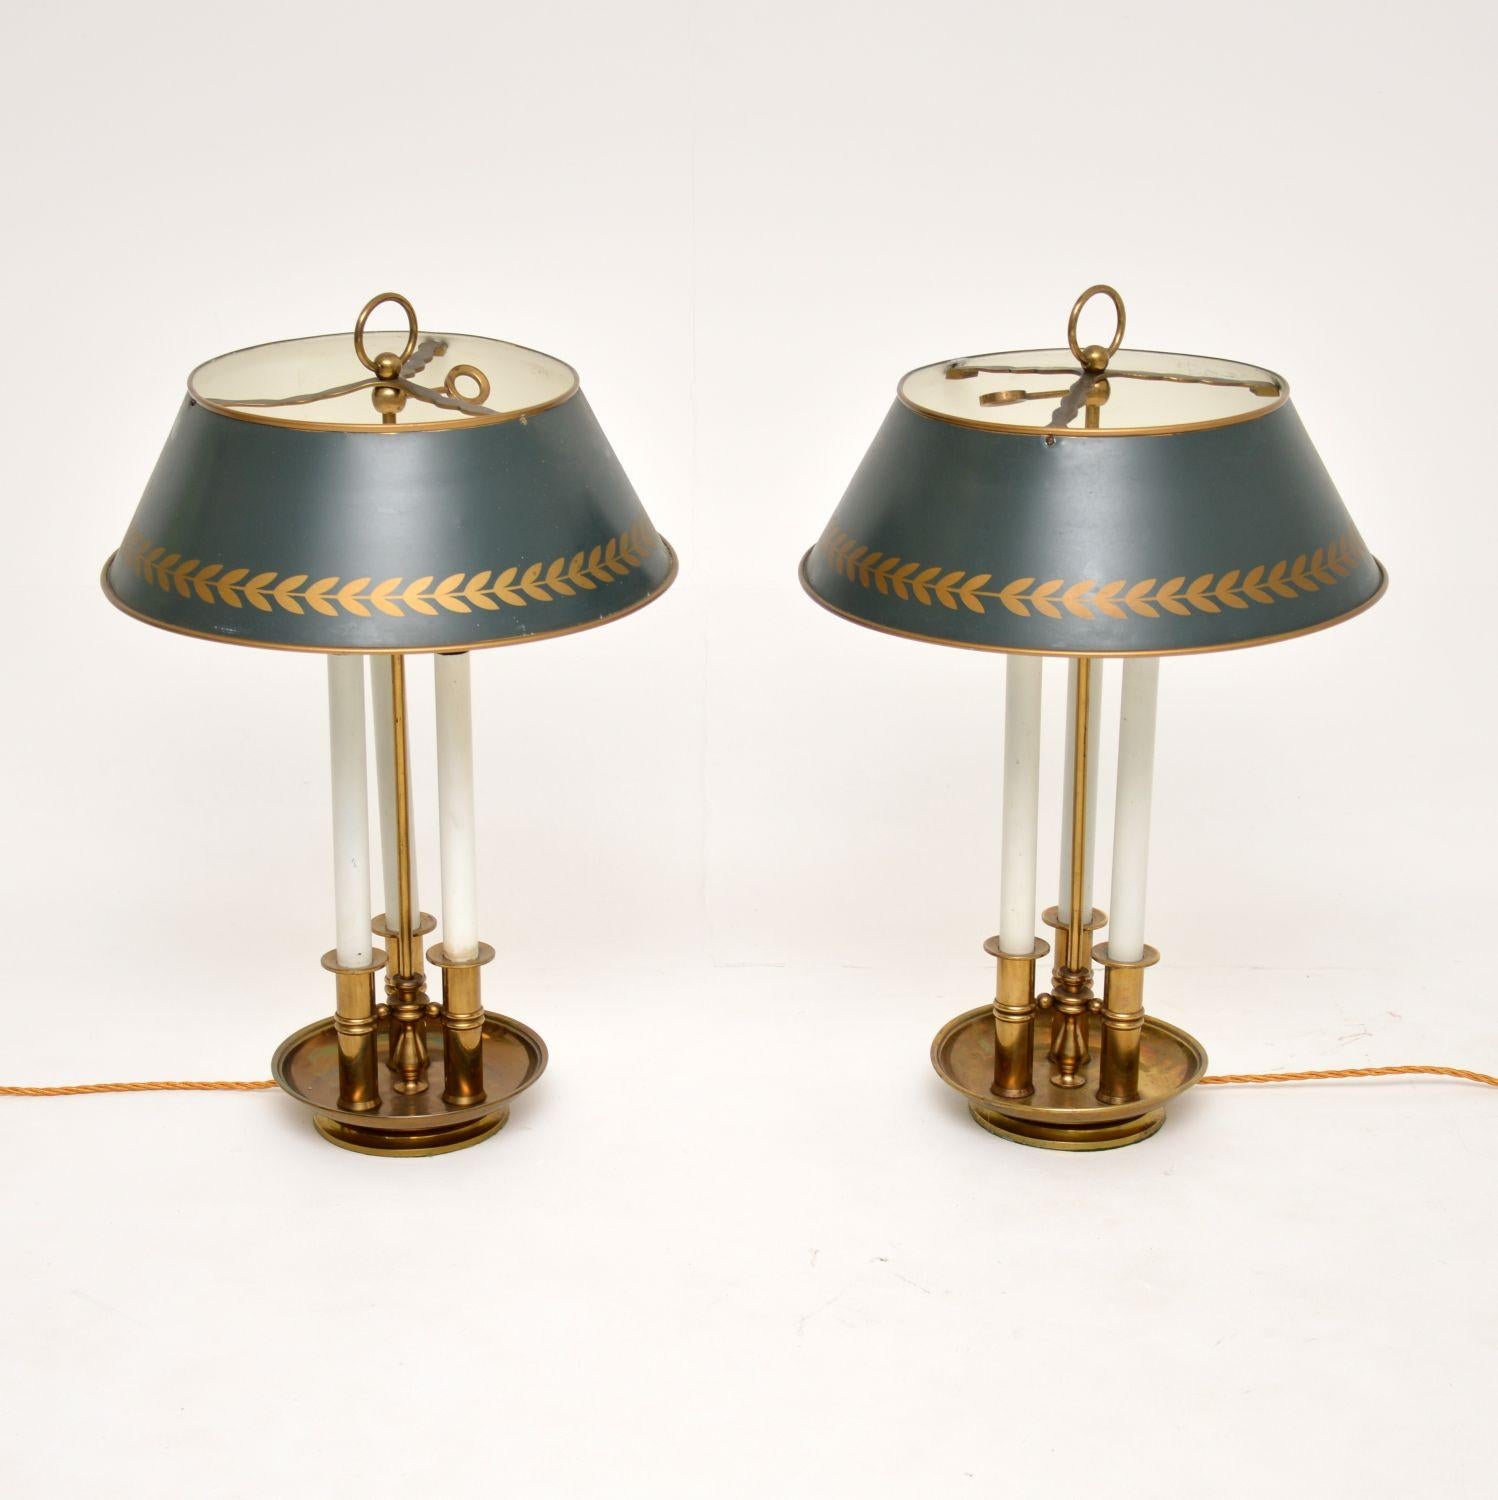 Une superbe paire de lampes de table antiques en laiton avec de beaux abat-jours en tole. Ils ont été fabriqués en Angleterre et datent des années 1920-30.

La qualité est exceptionnelle, le design est magnifique et la taille est